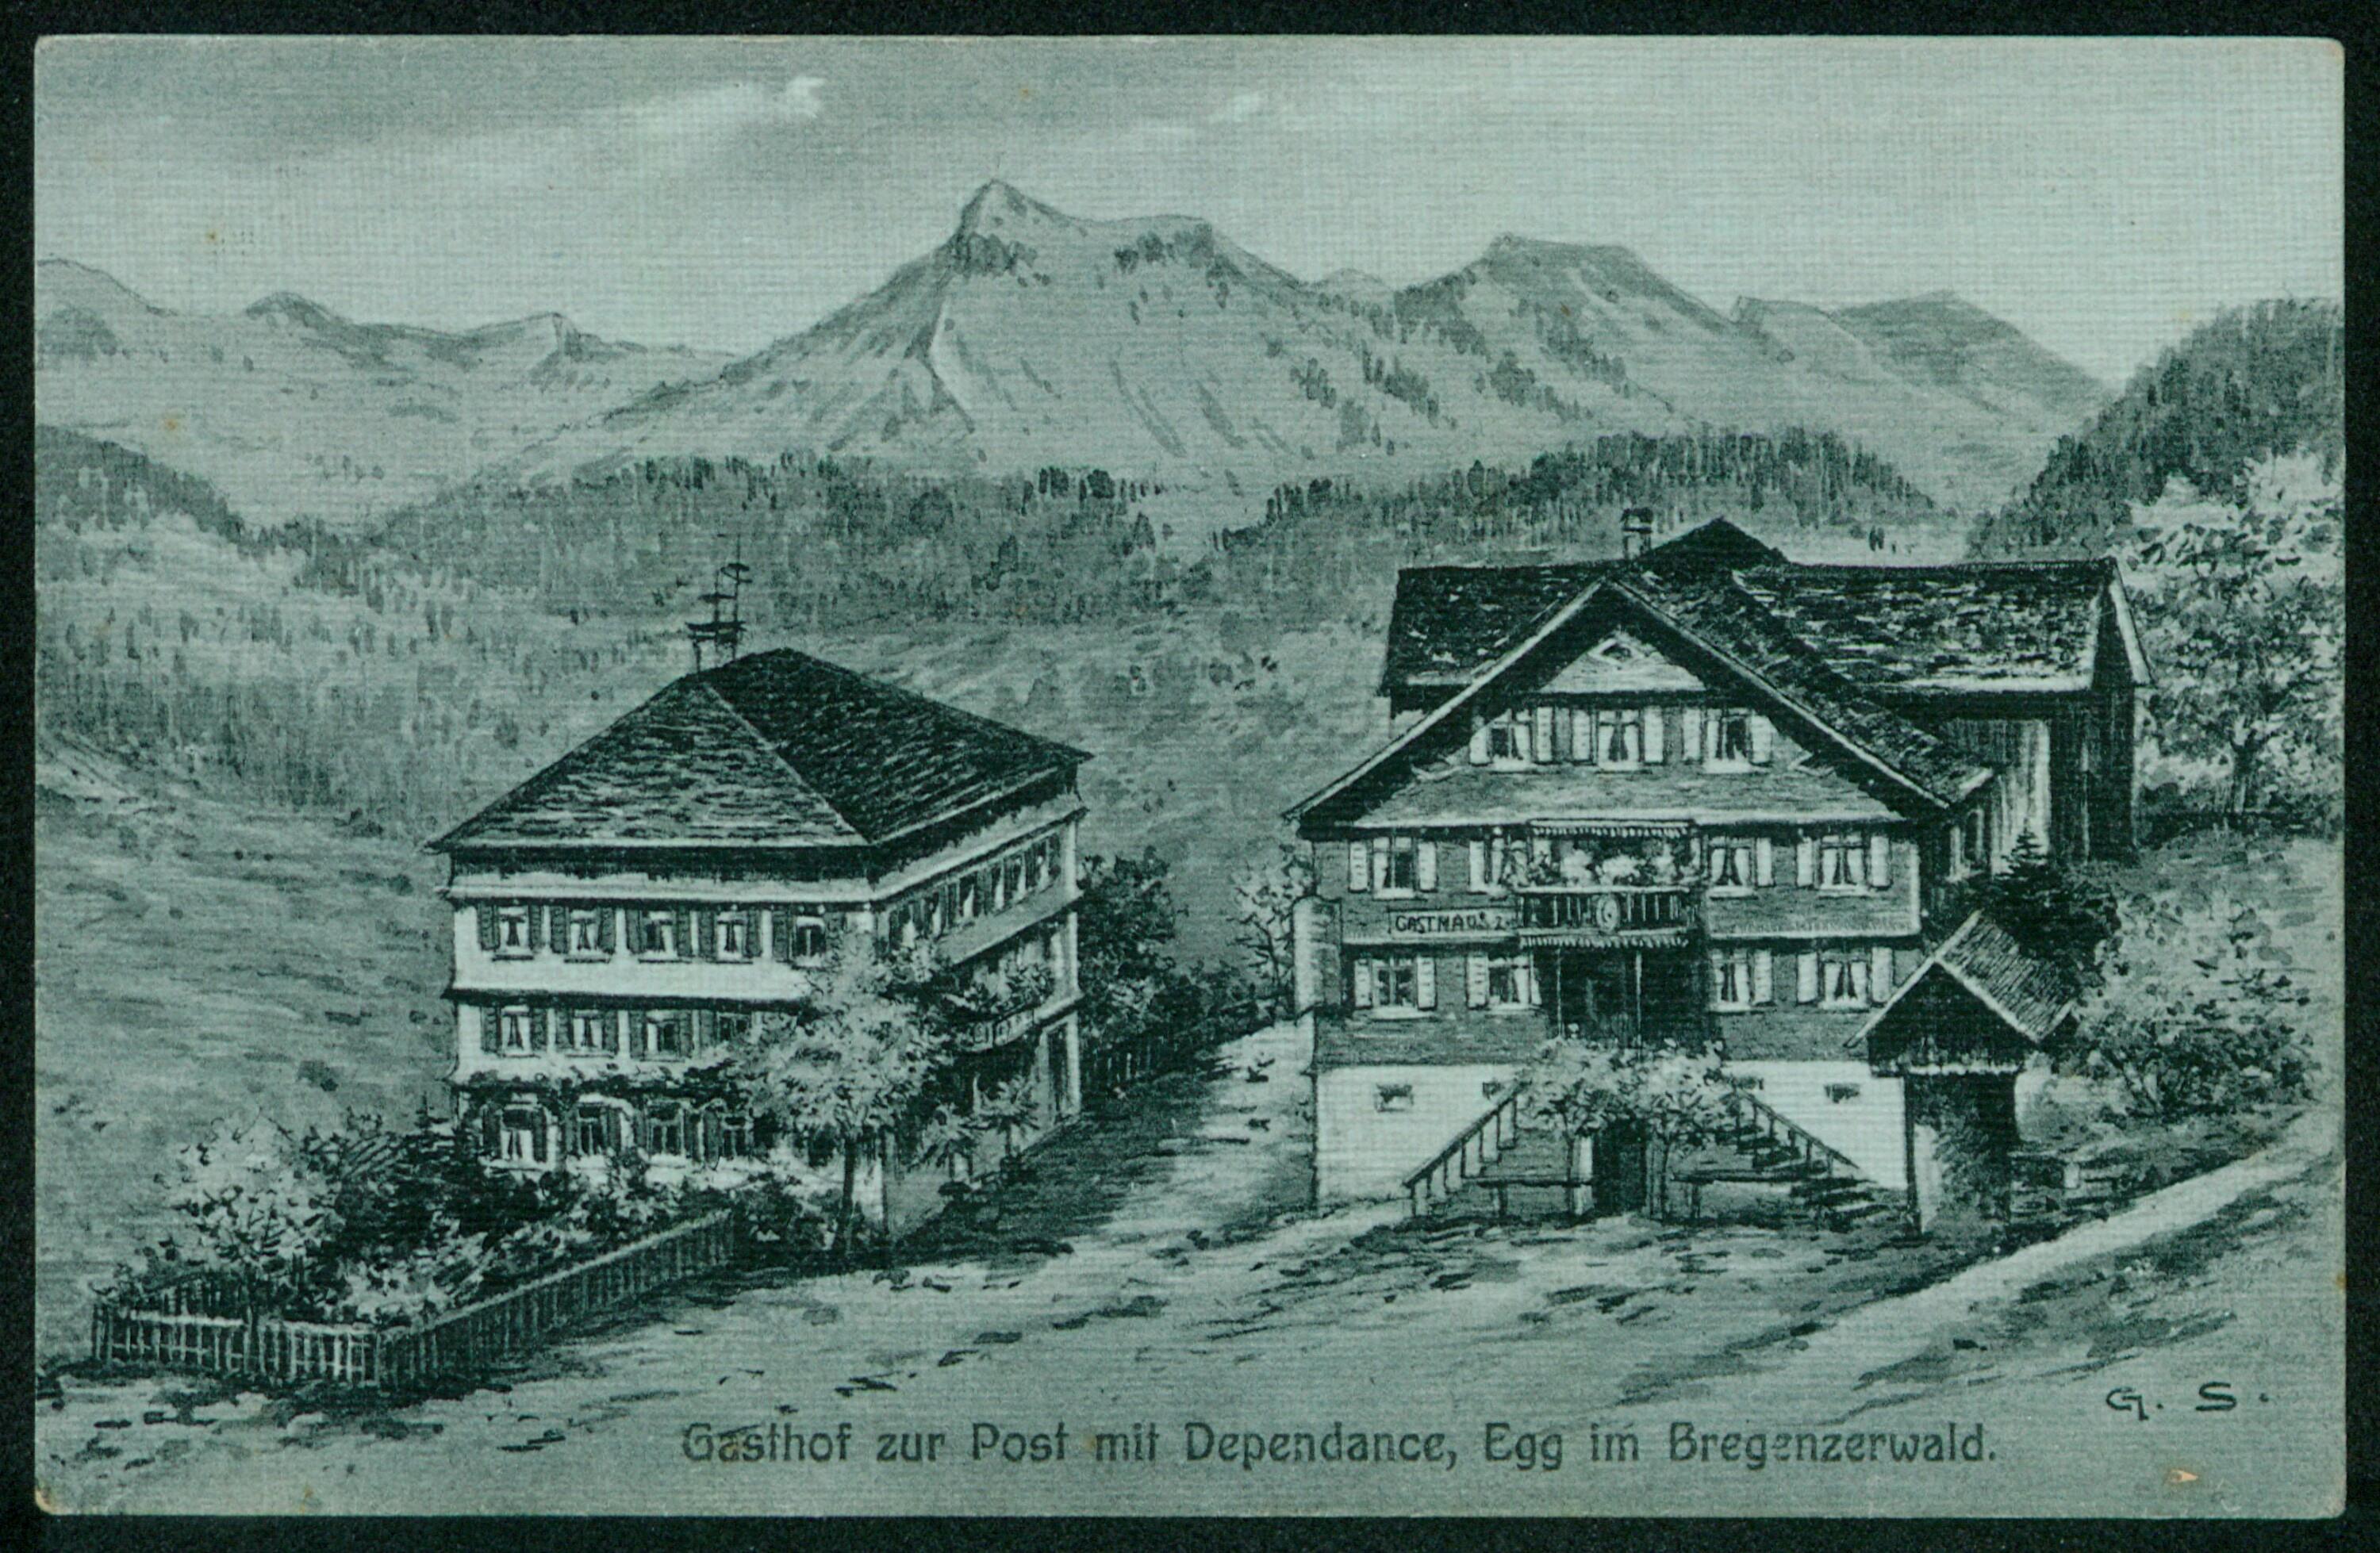 Gasthof zur Post mit Dependance, Egg im Bregenzerwald></div>


    <hr>
    <div class=